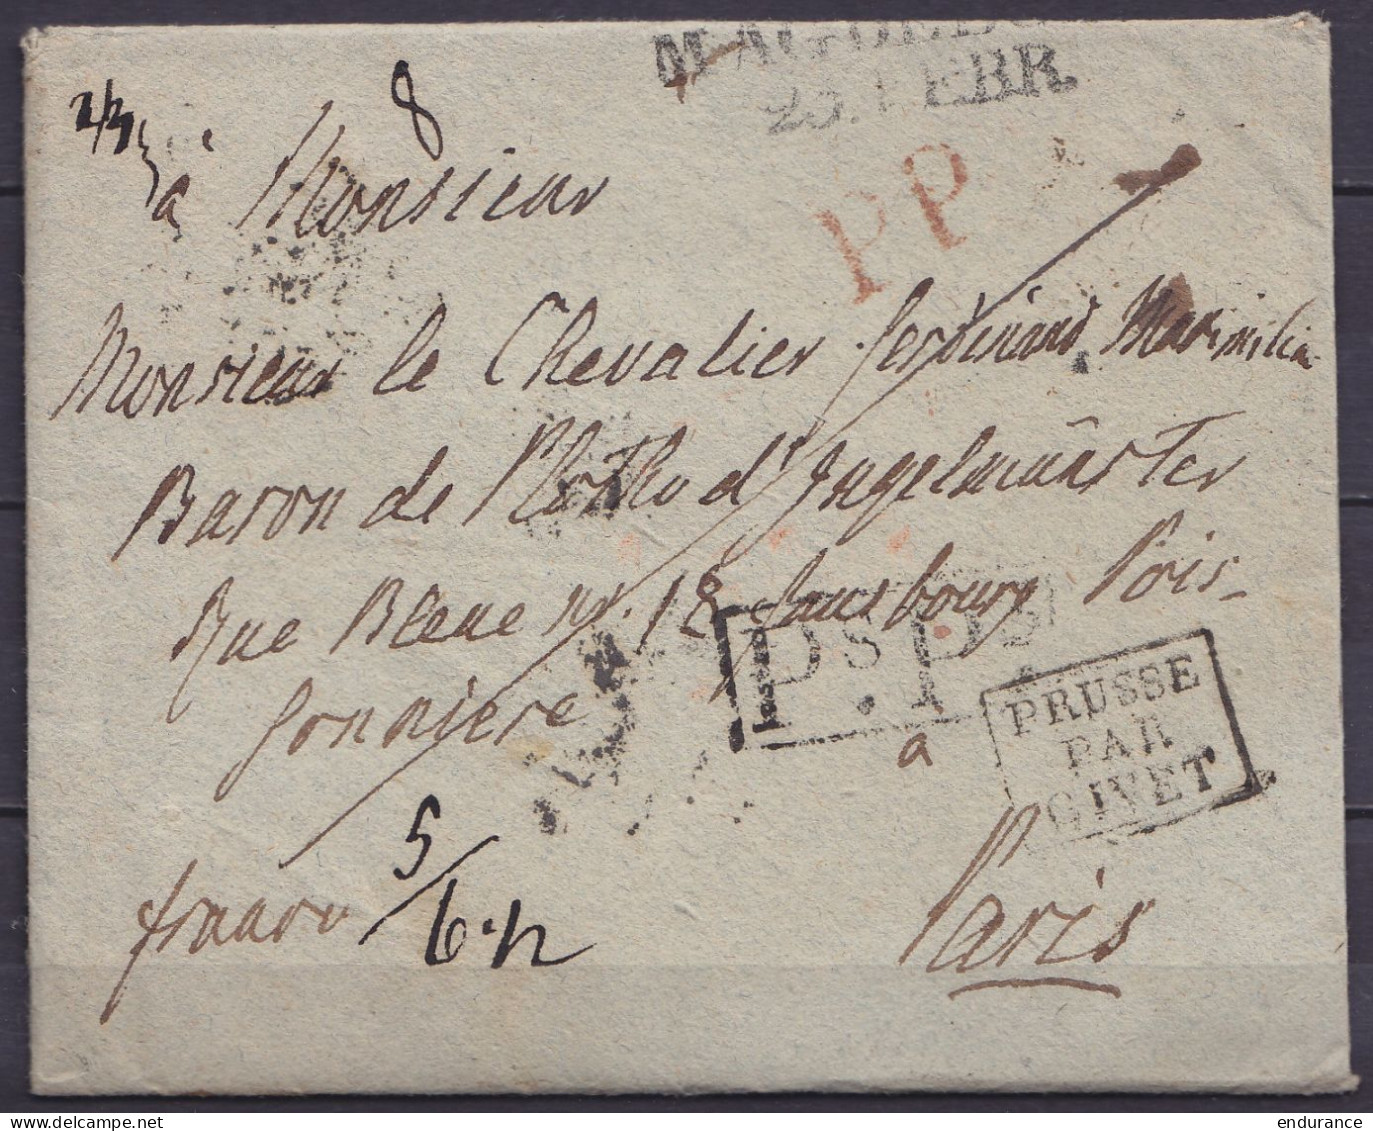 LAC Datée 19 Février 1820 De MAGDEBOURG Pour PARIS - Griffes "MAGDEBURG /20.FEBR.", "PP" & [Ps.Ps.] - Marque [PRUSSE PAR - Préphilatélie